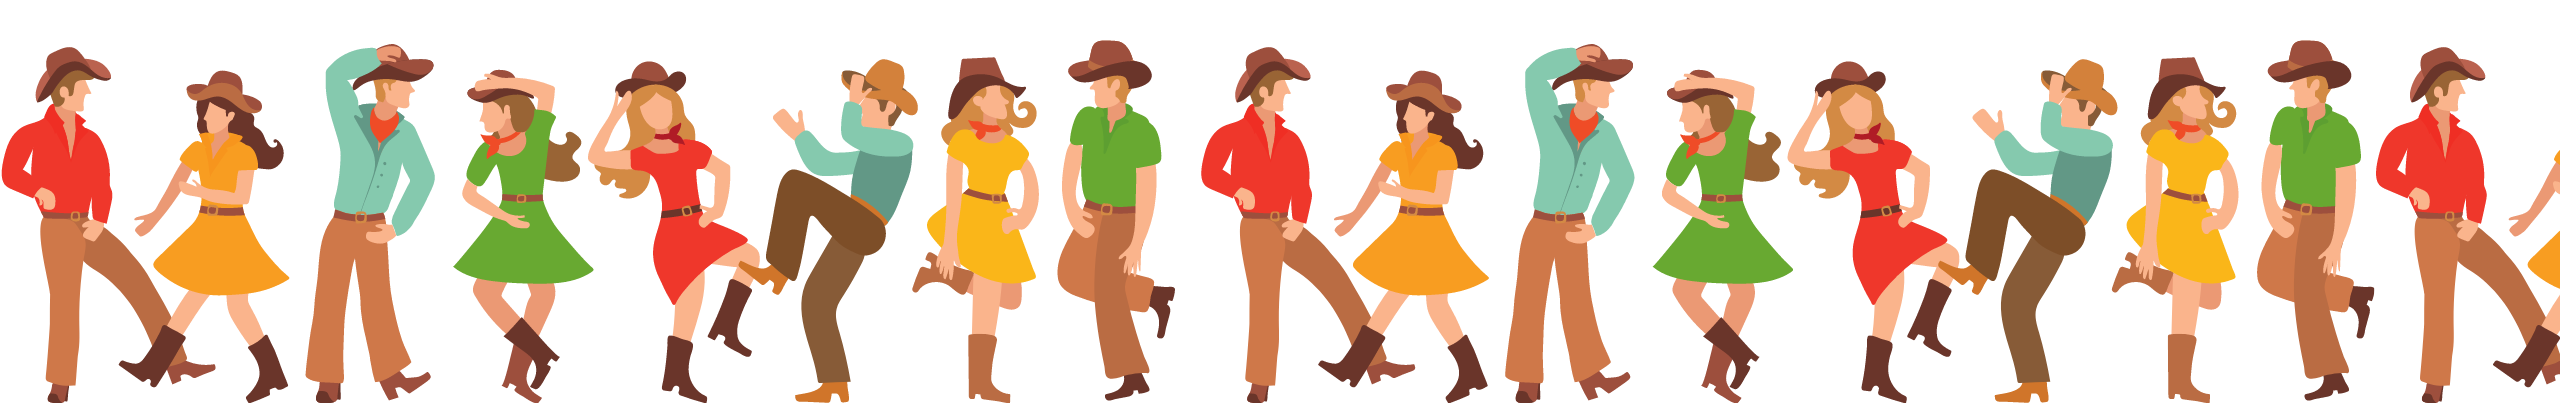 Cowboys Dancing